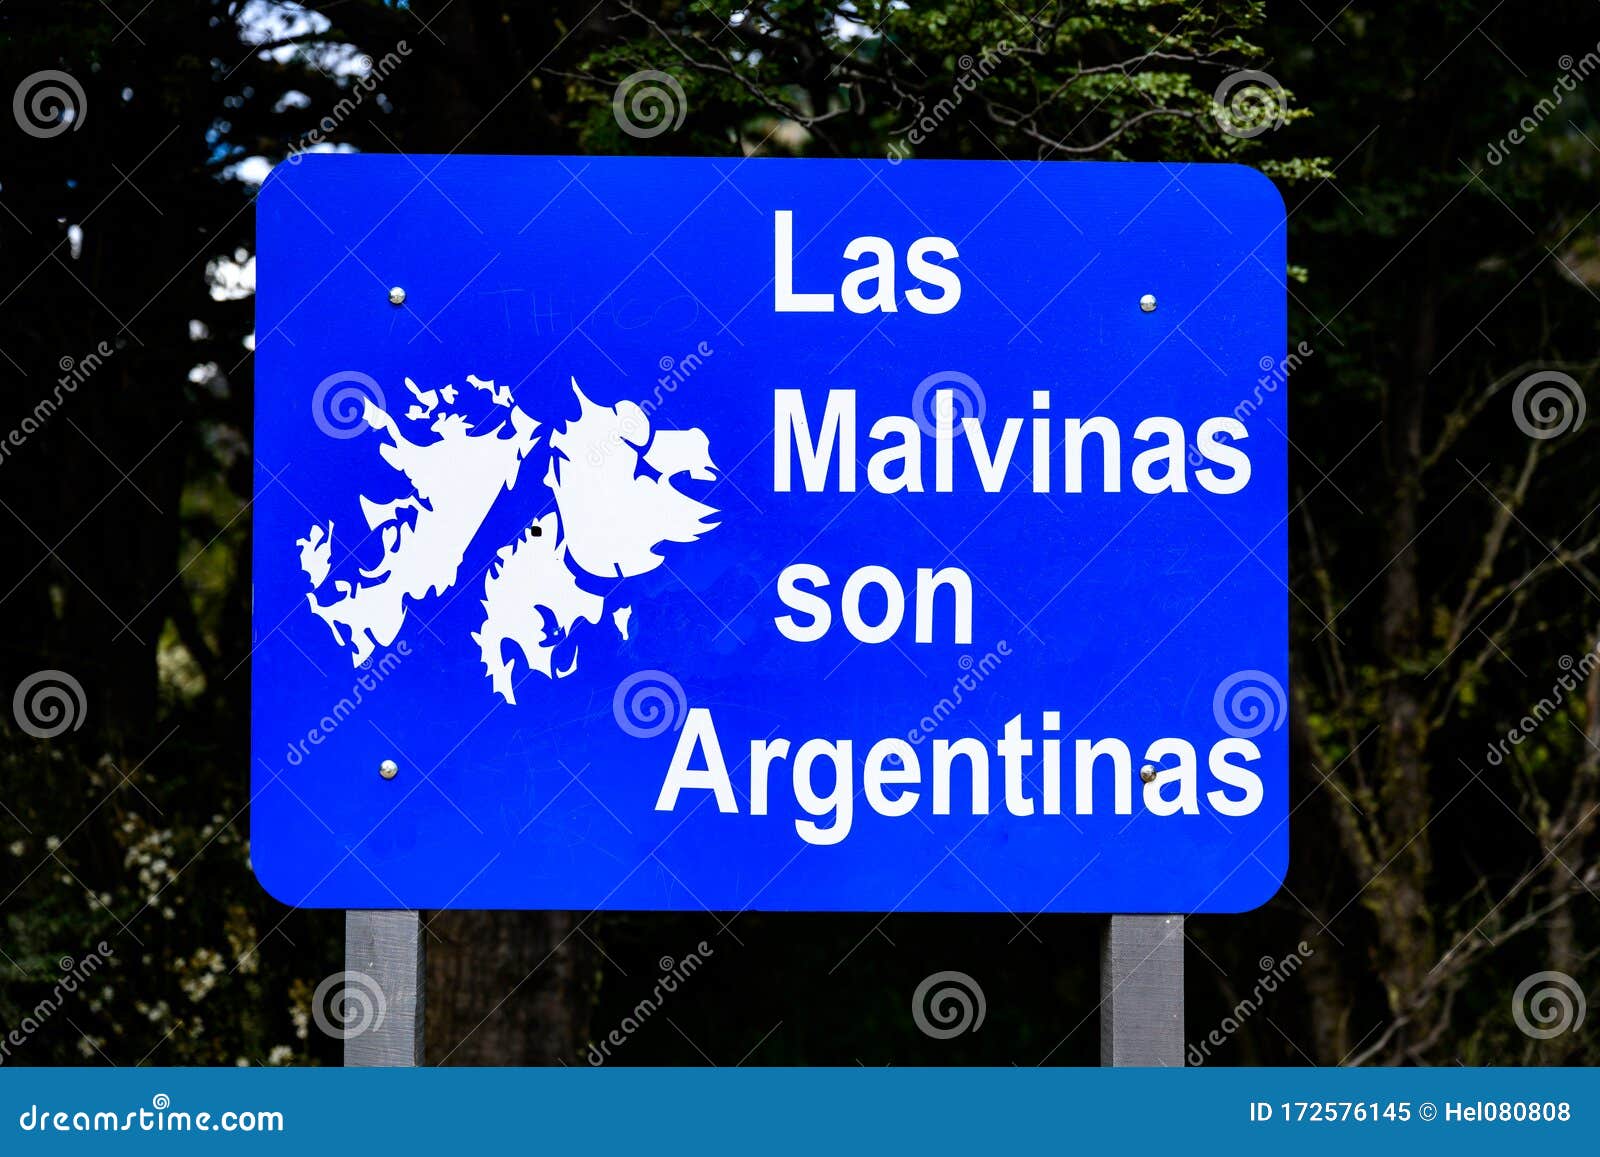 political declaration in national park tierra del fuego in patagonia, argentina. las malvinas, falkland islands are argentinan